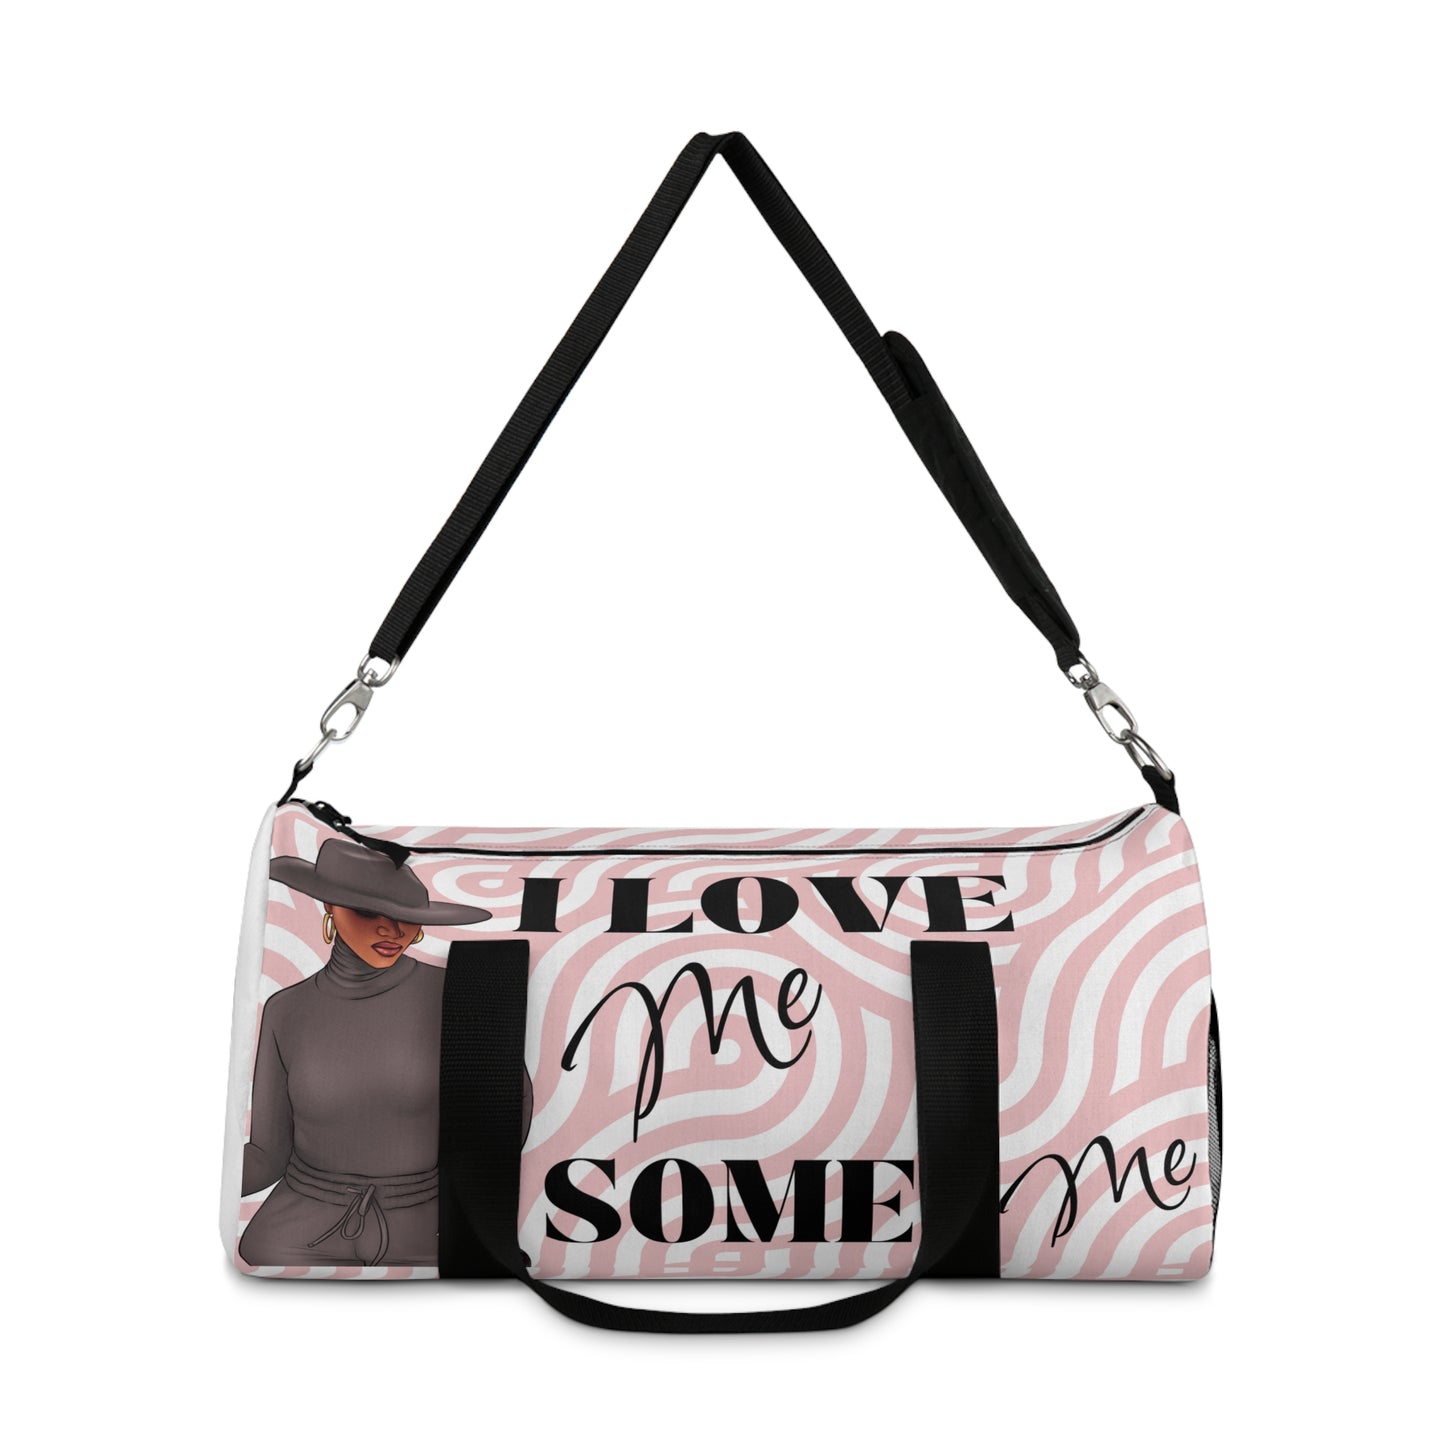 I Love Me Some Me Stylish Duffle Bag | Travel Bag | Gym Bag